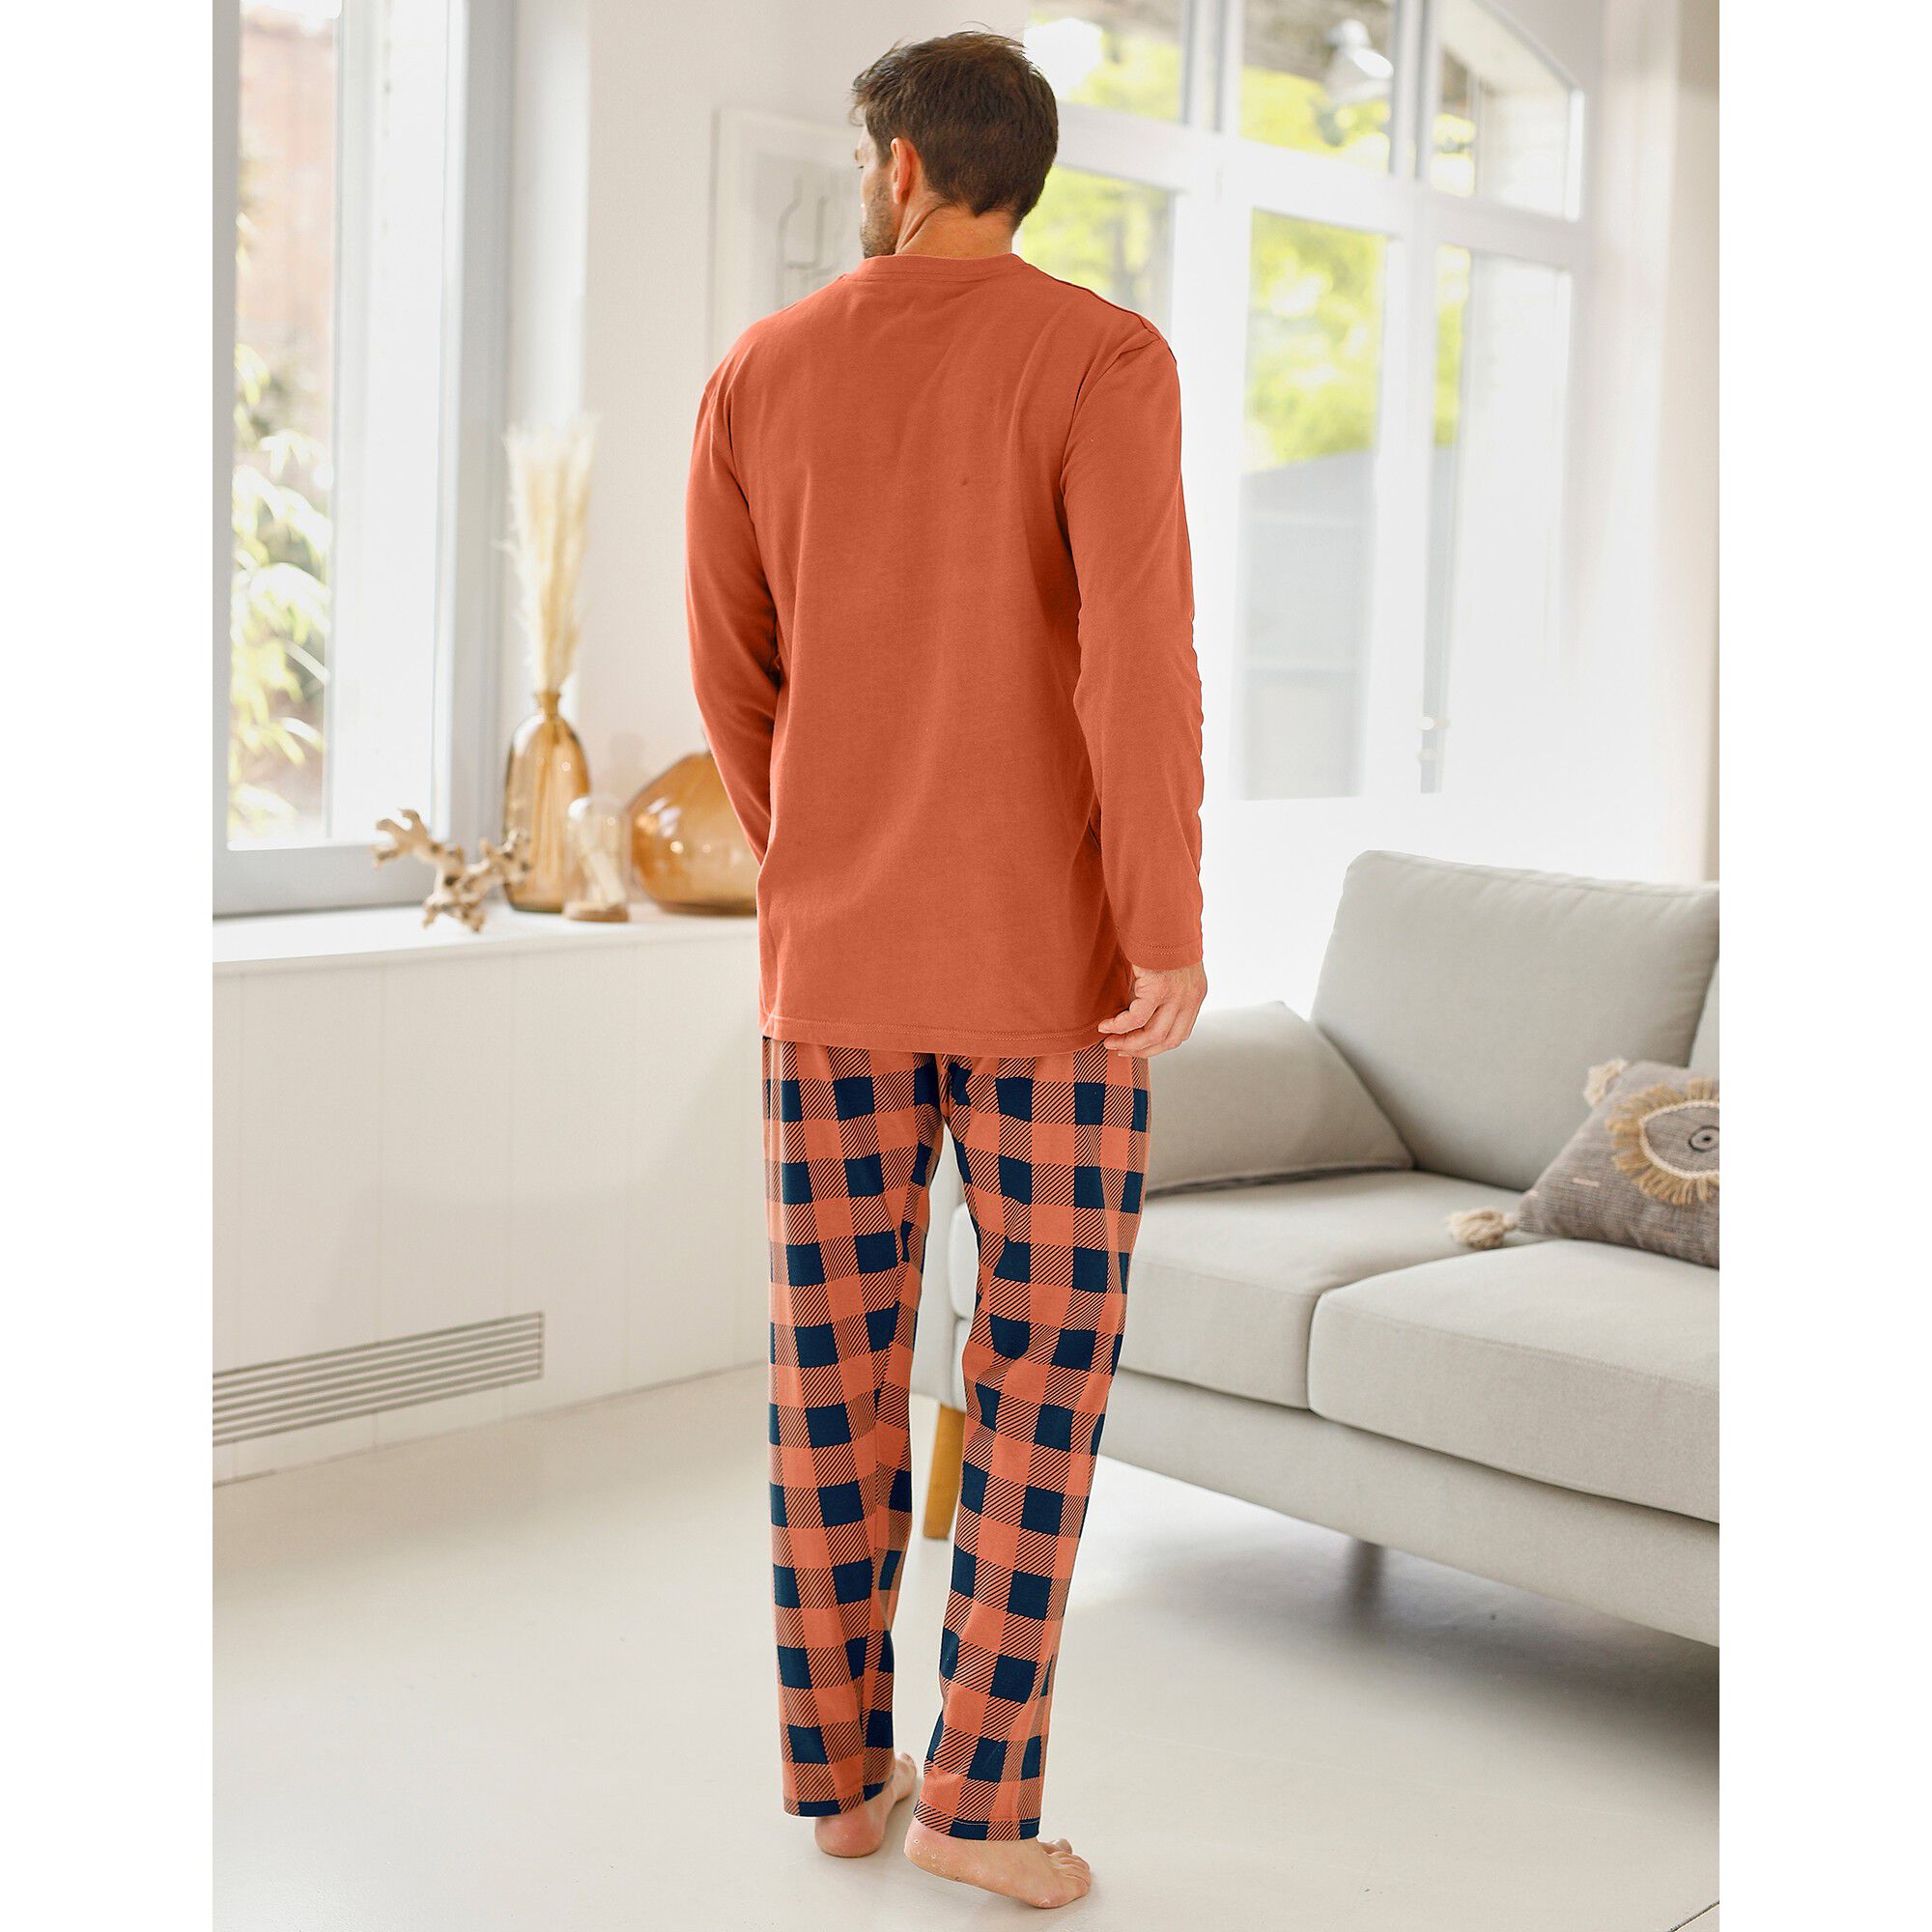 Blacheporte Homme Vêtements Sous-vêtements vêtements de nuit Pyjamas Short Pyjama Imprimé À Carreaux 